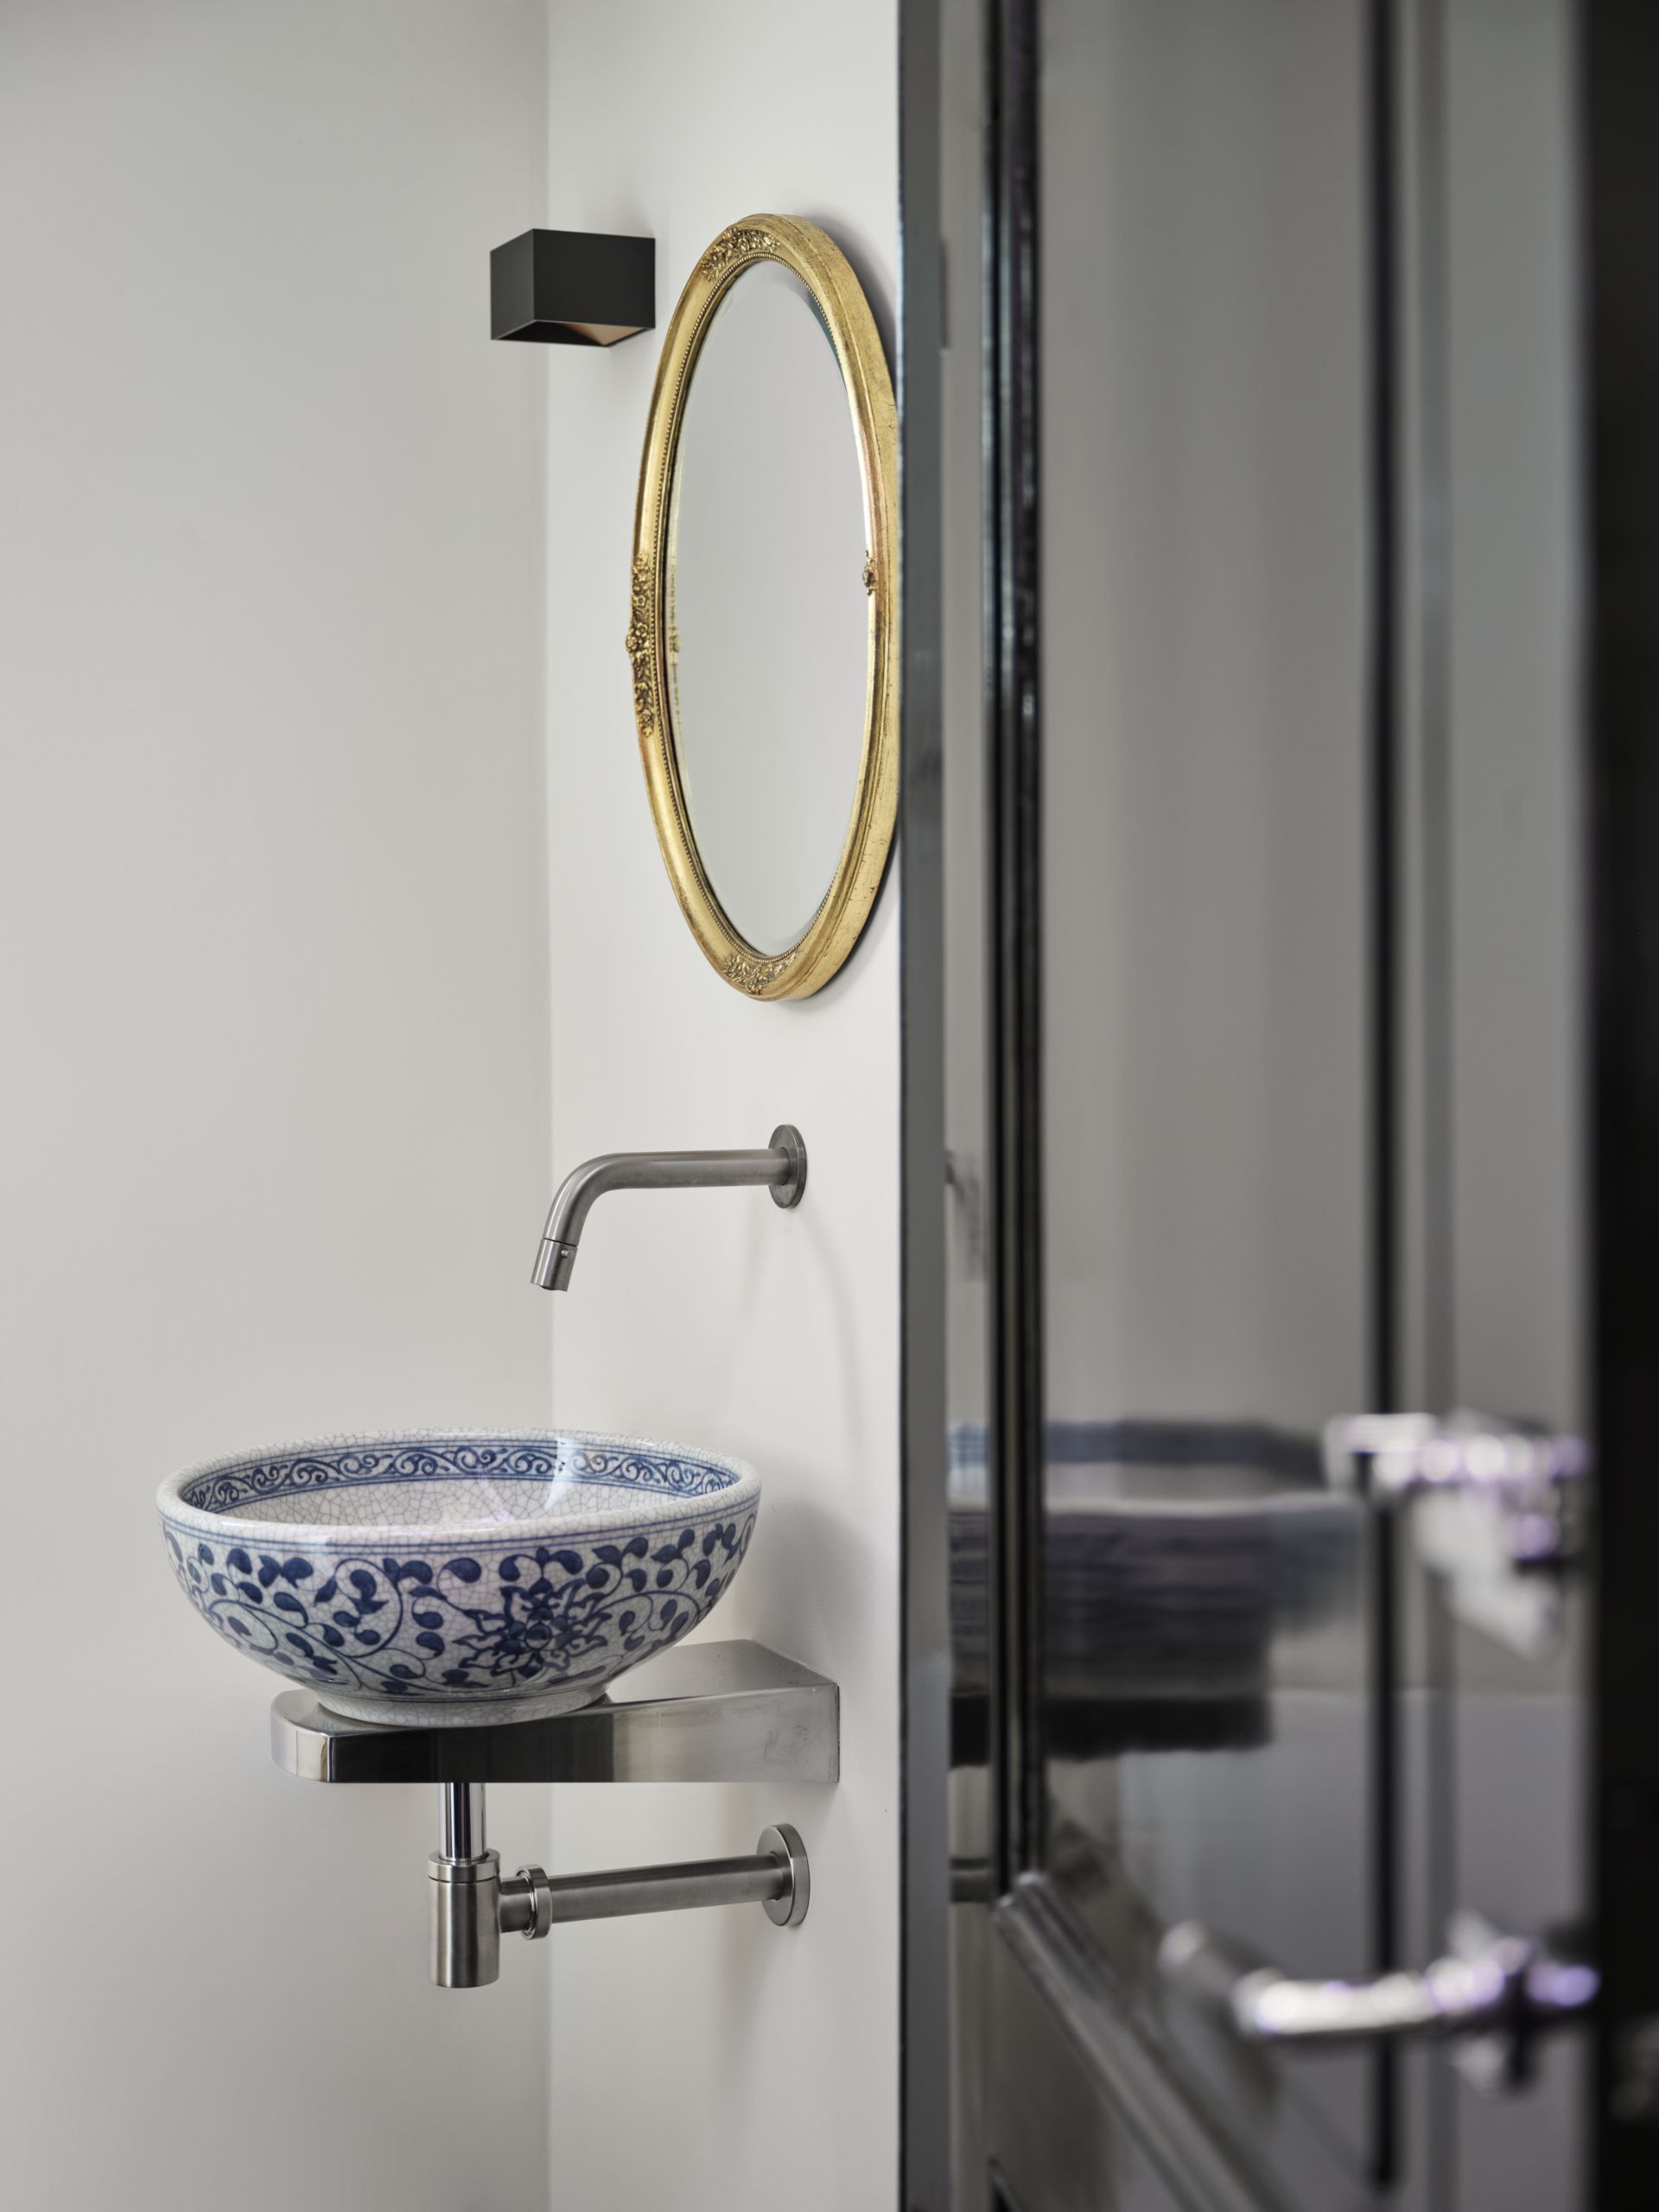 Foto: een badkamer met een moderne uitstraling      eerste kamer badkamers   014